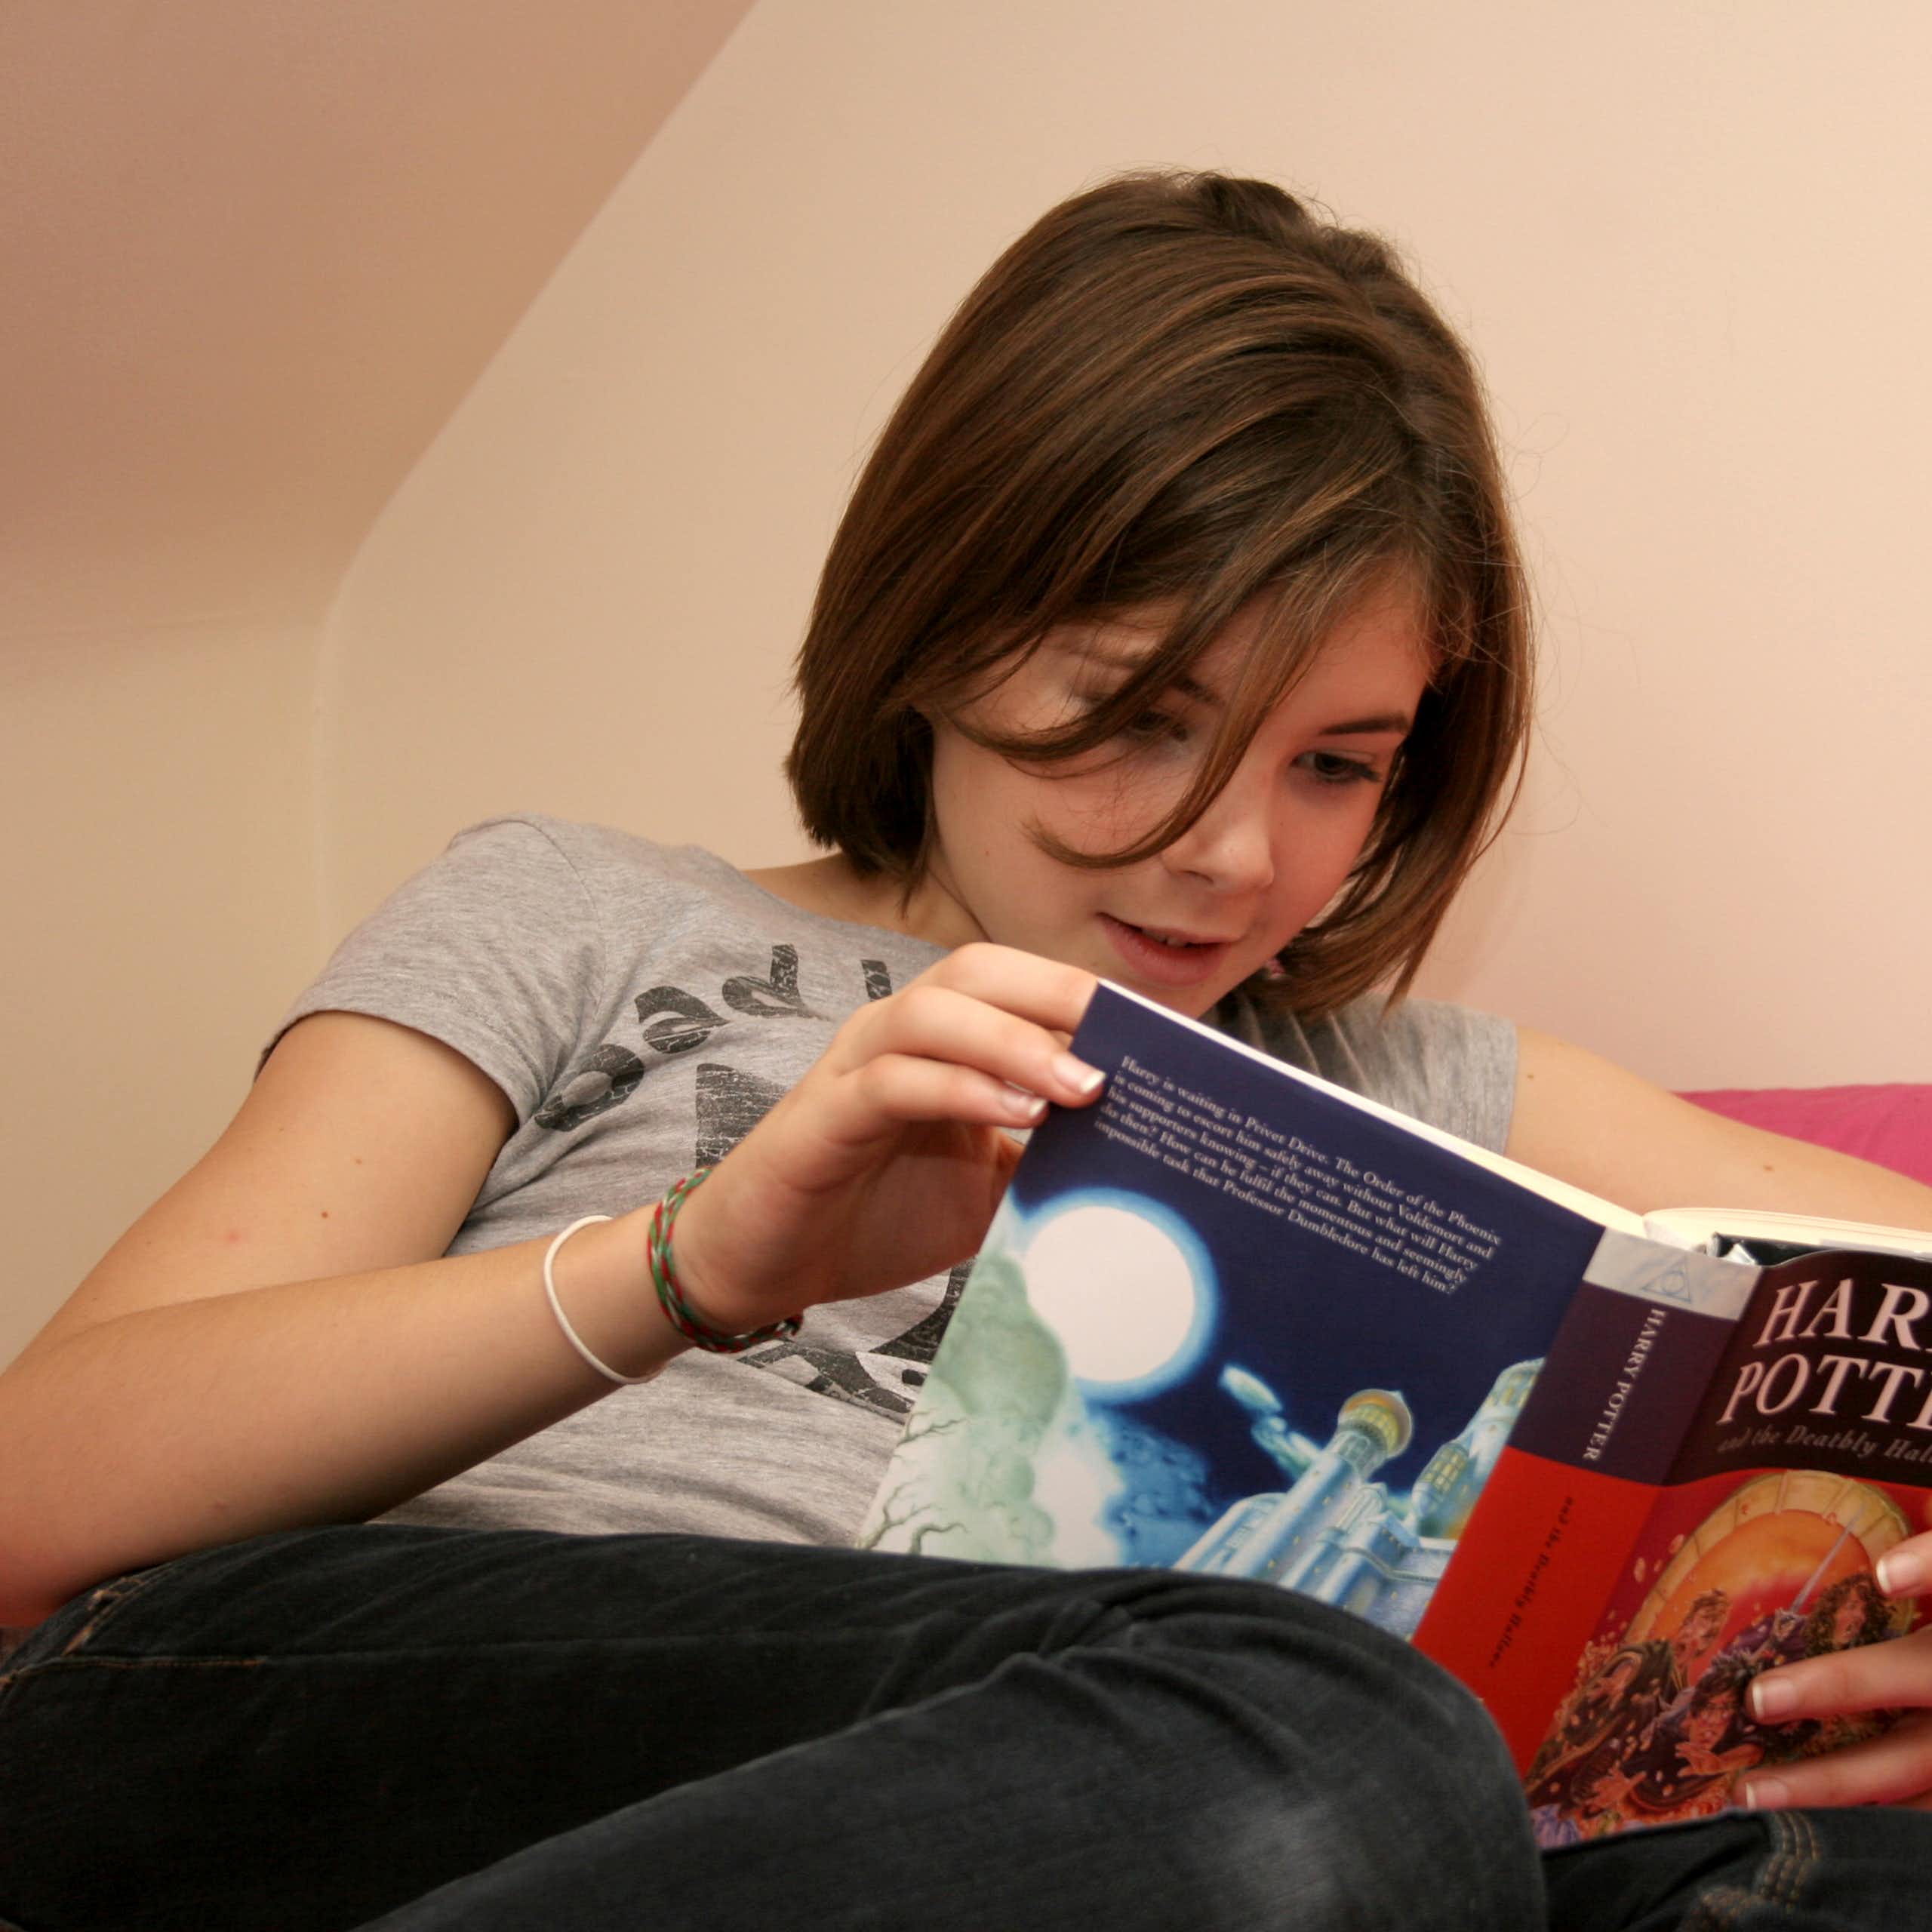 De Harry Potter a Teseo: cómo los arquetipos pueden conectar al público adolescente con la literatura clásica